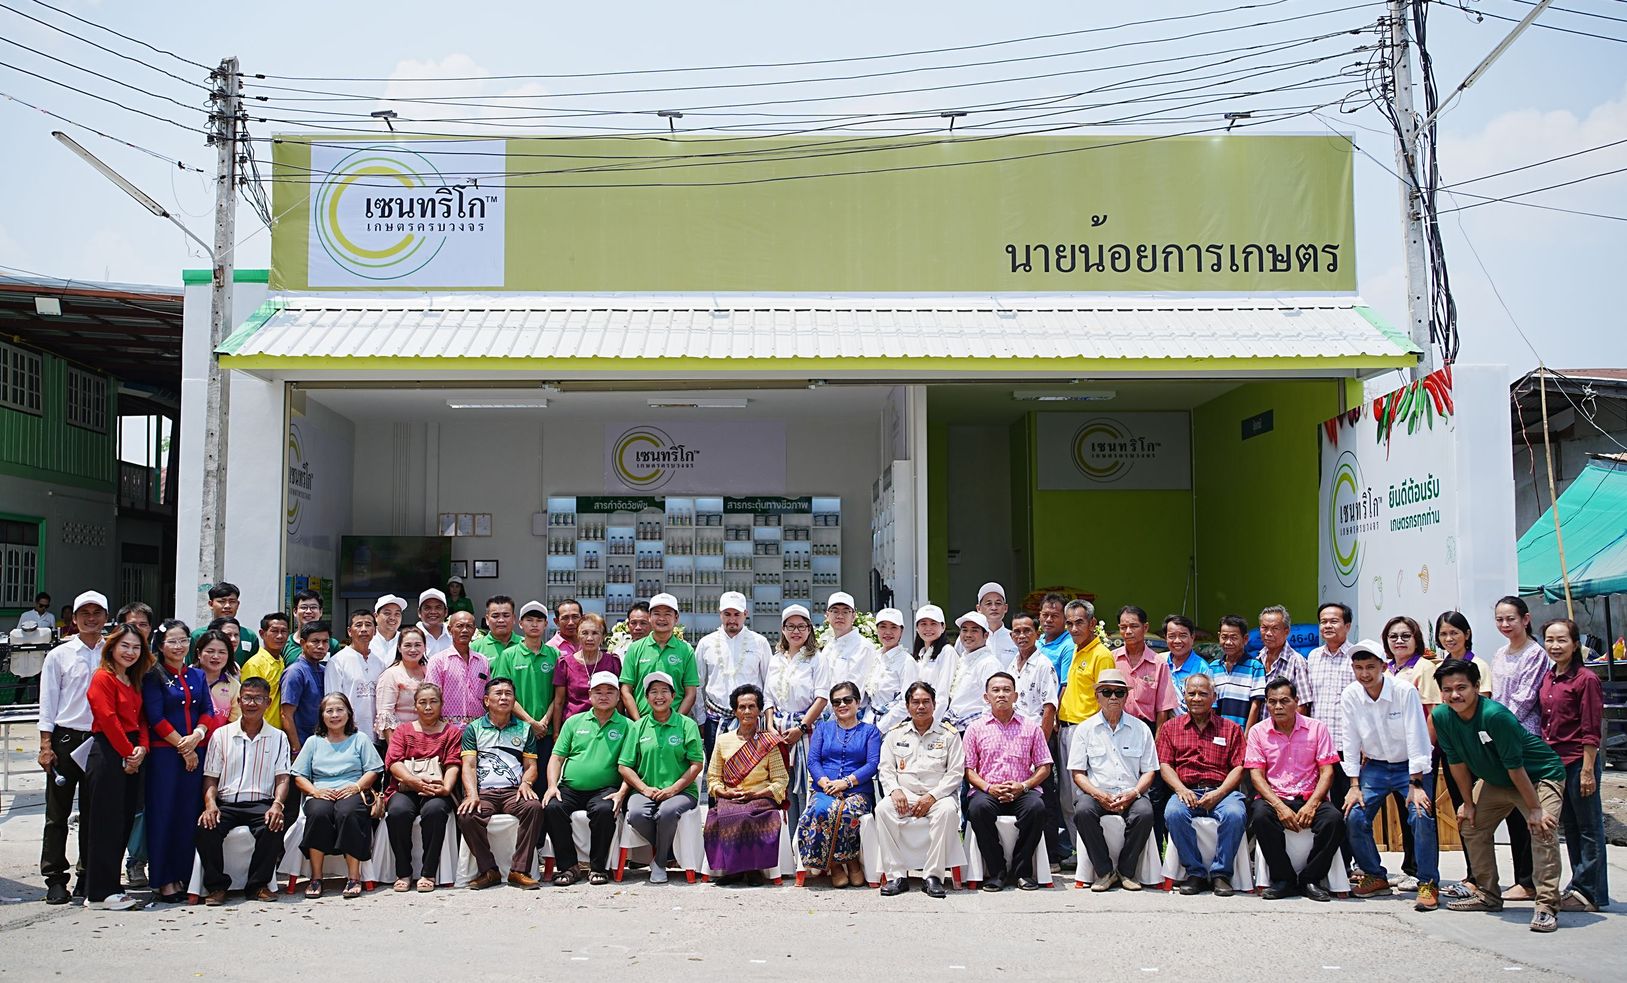 ซินเจนทา ประเทศไทย เปิดศูนย์เซนทริโก (CENTRIGO) ระบบนิเวศเกษตรกรรม เสนอโซลูชั่นการเกษตรแบบครบวงจร พร้อมขับเคลื่อนภาคเกษตรด้วยเทคโนโลยีการทำเกษตรสมัยใหม่